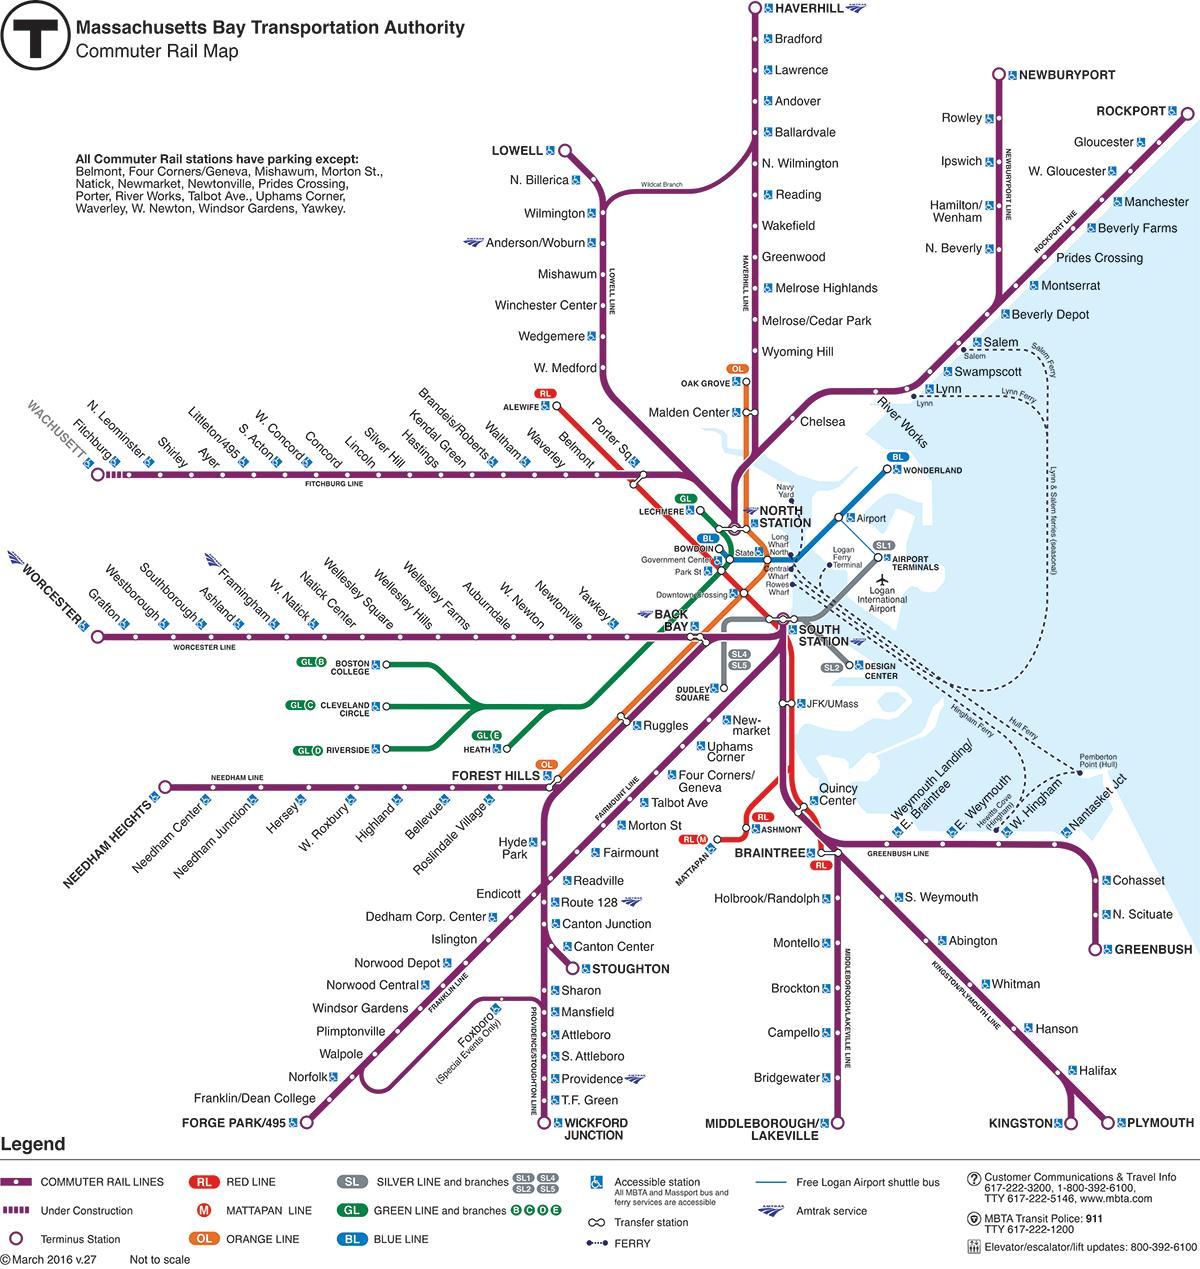 બોસ્ટન ટ્રેન સ્ટેશન નકશો